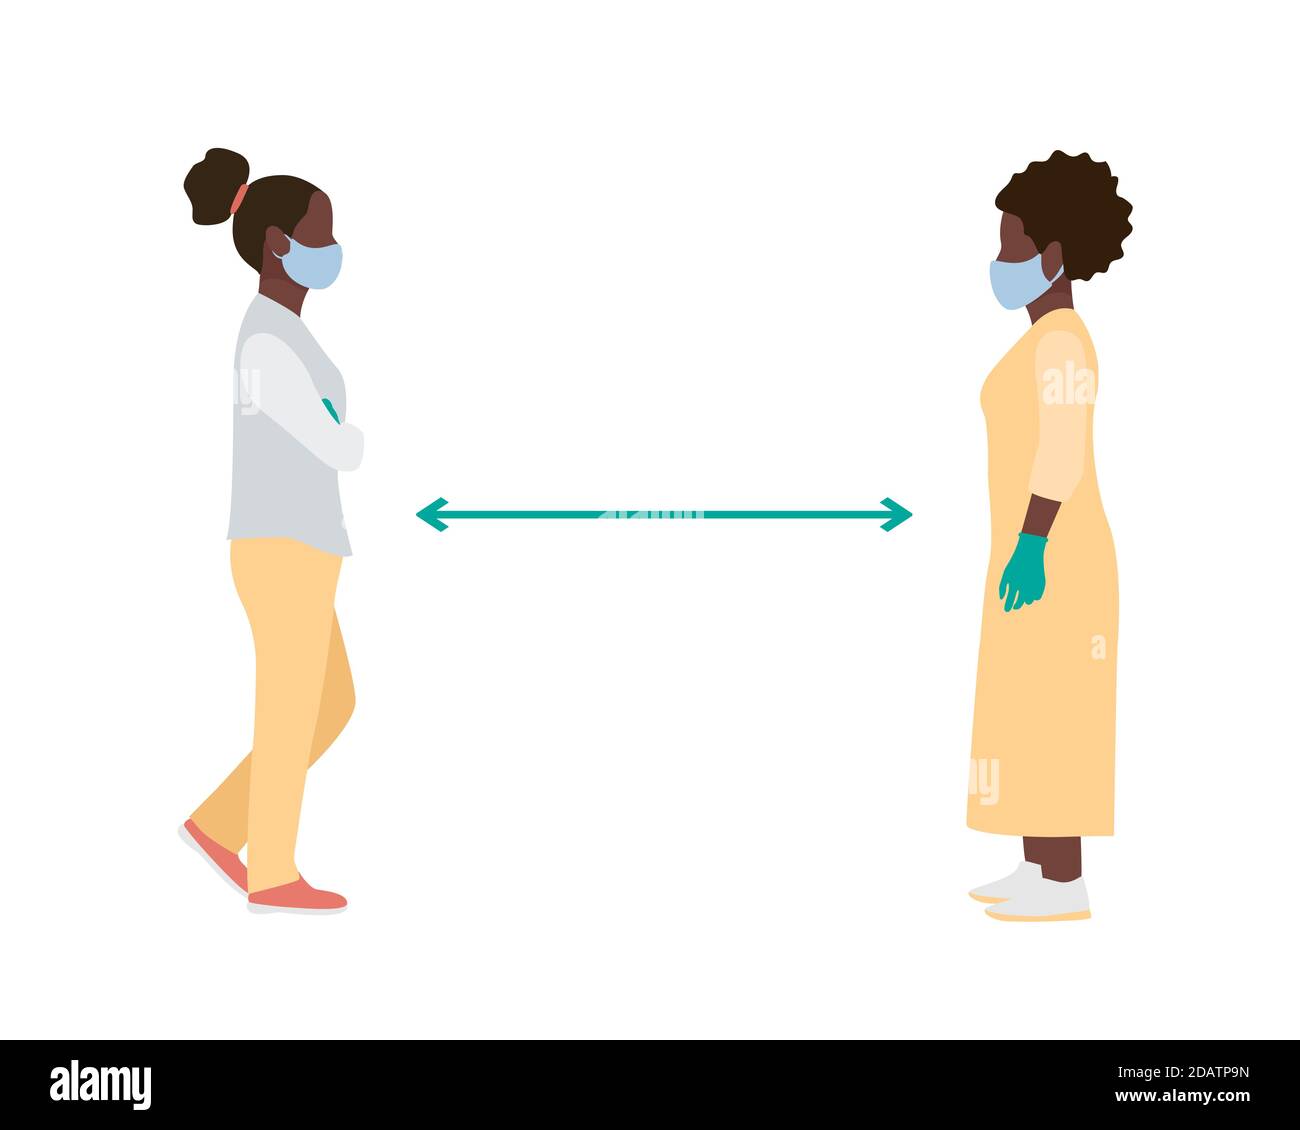 Soziale Distanz zwei schwarze afroamerikanische Frauen mit medizinischen Masken und Handschuhen stehen vor einer vollen Höhe. Flache Vektordarstellung Stock Vektor